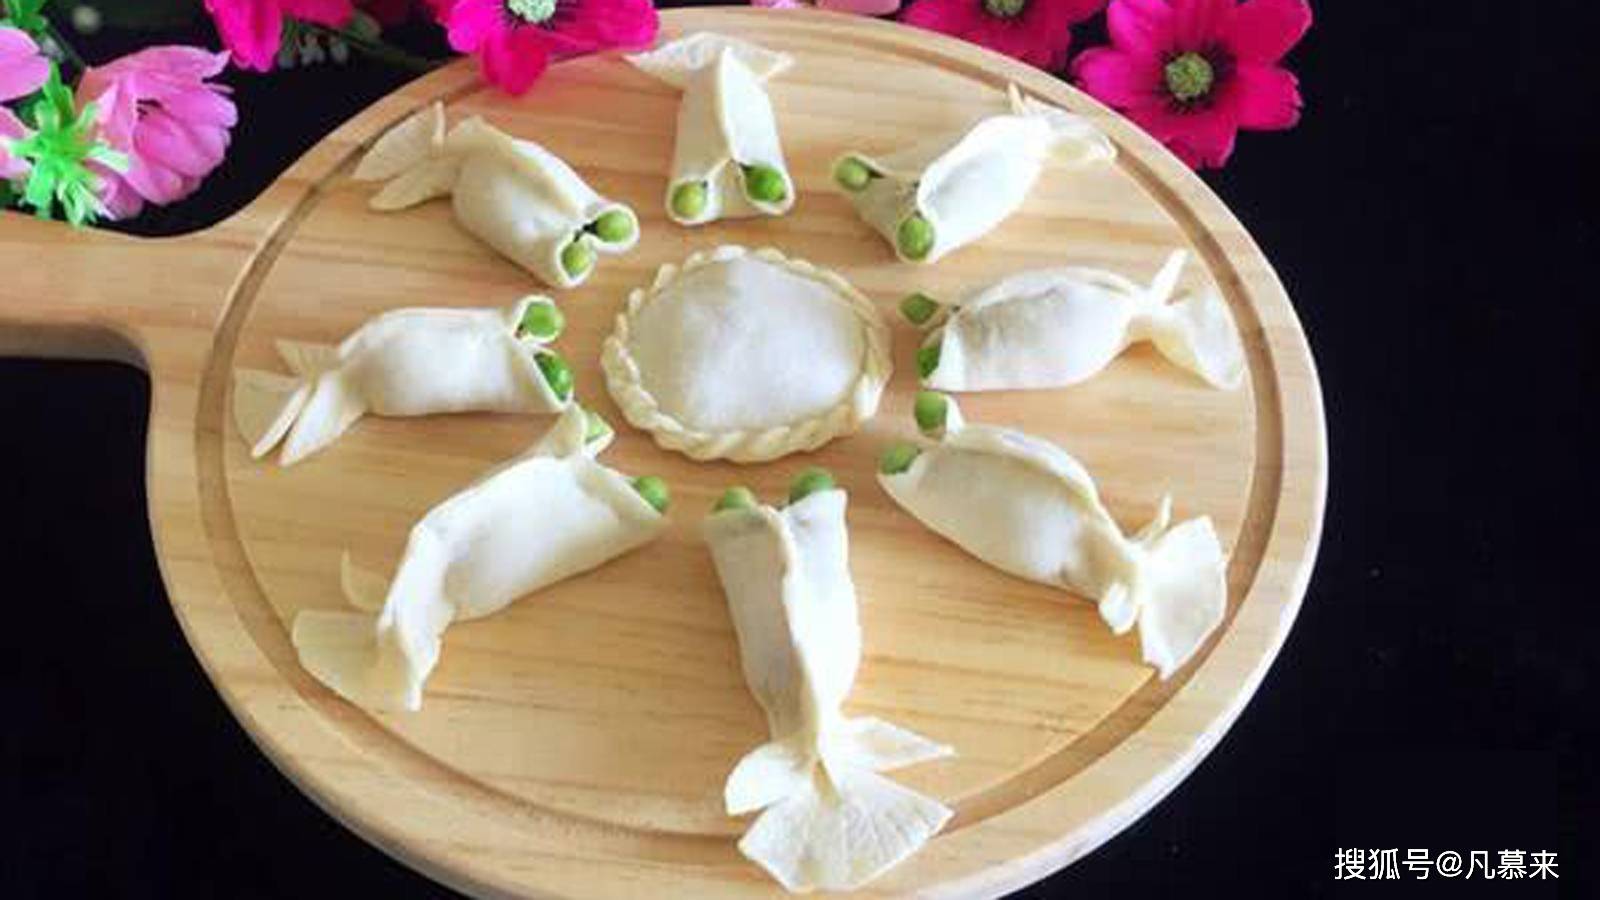 原创饺子的由来24种花样饺子的包法图解13种饺子馅的寓意16个国家饺子